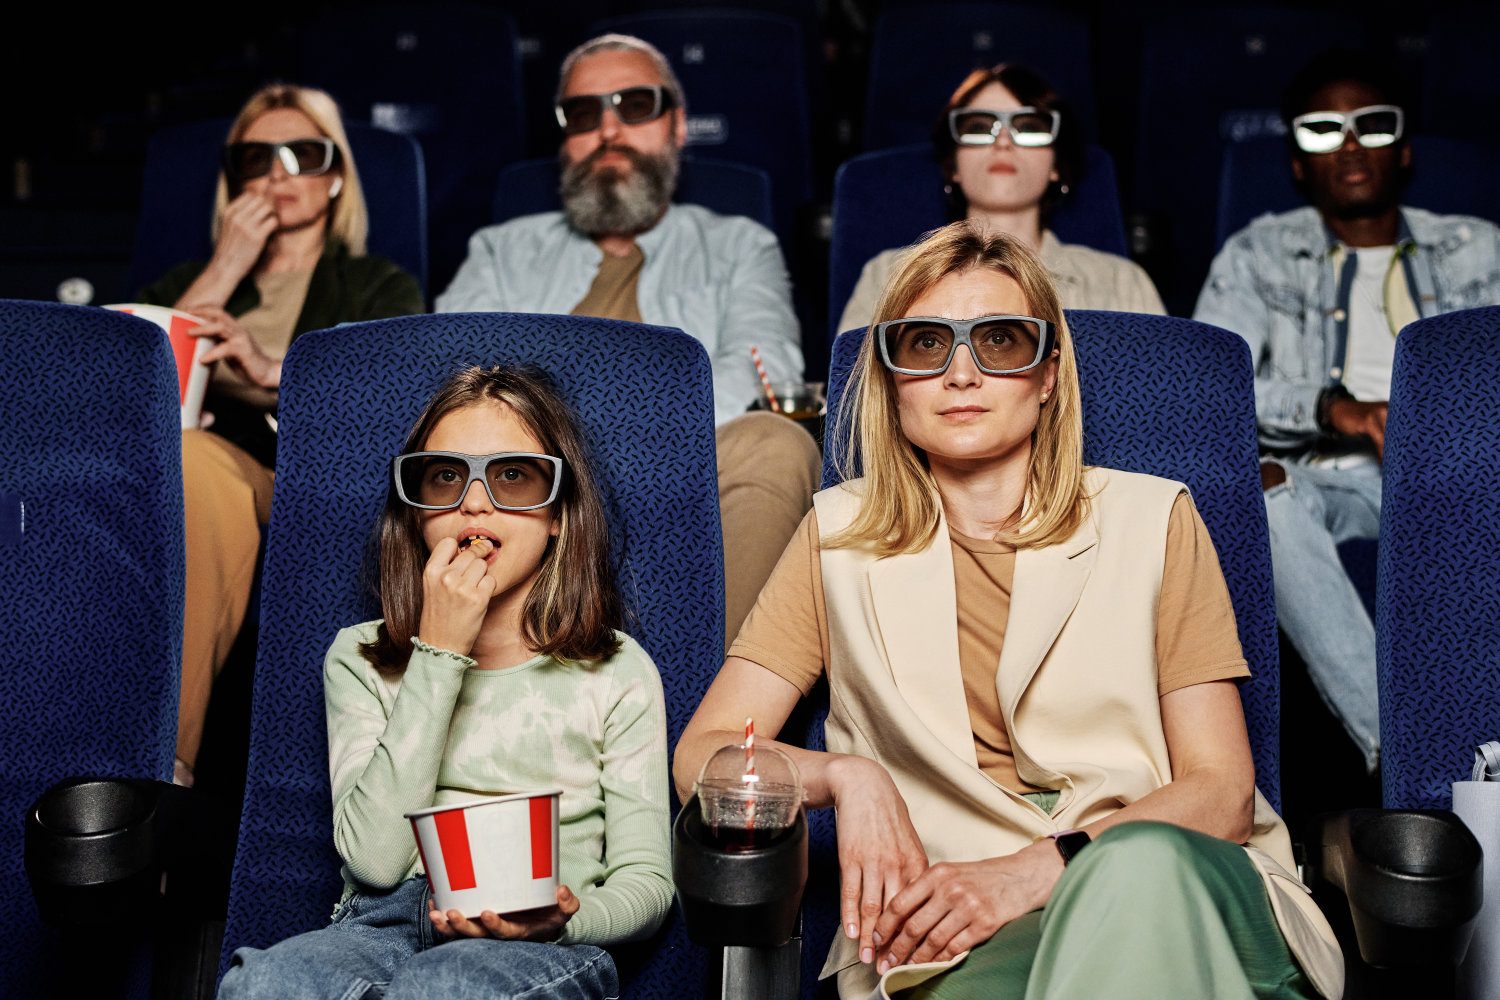 Menschen im Kino schauen einen 3D Film